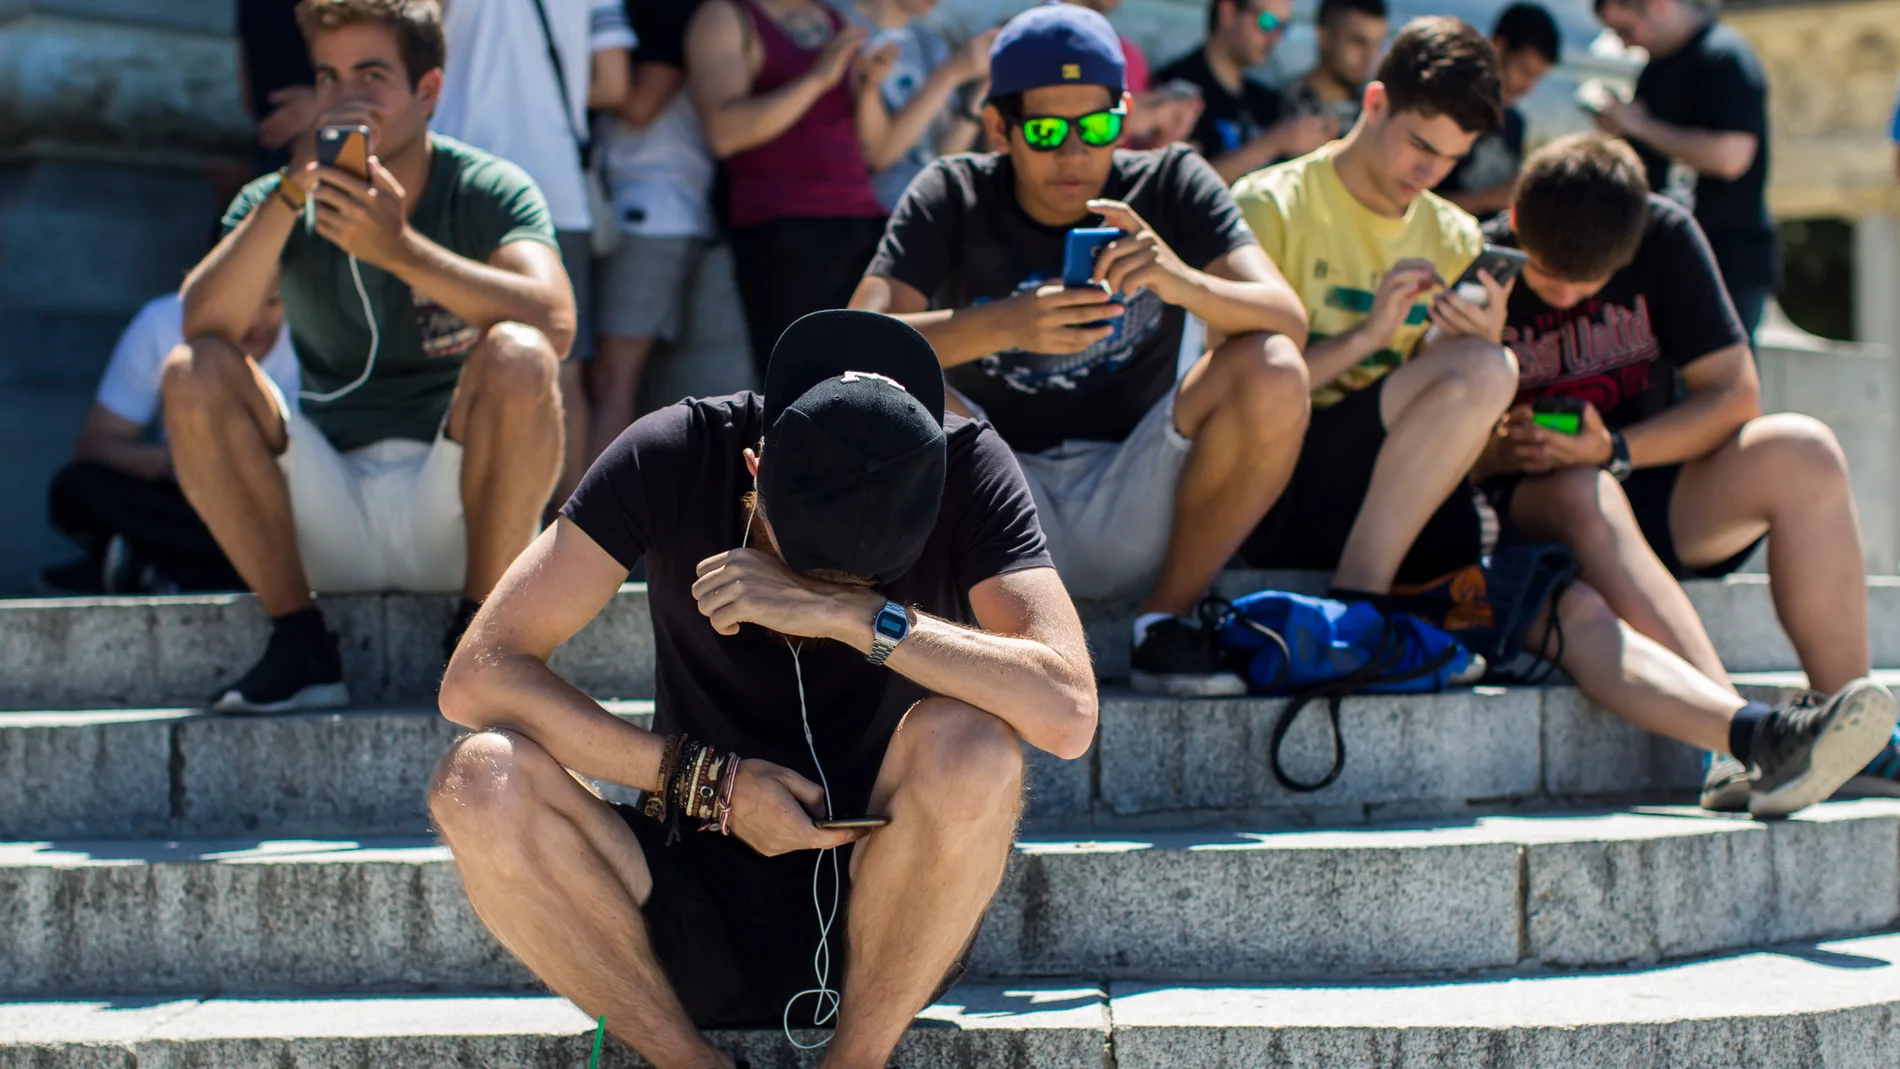 El uso del móvil por parte de los adolescentes es considerado excesivo